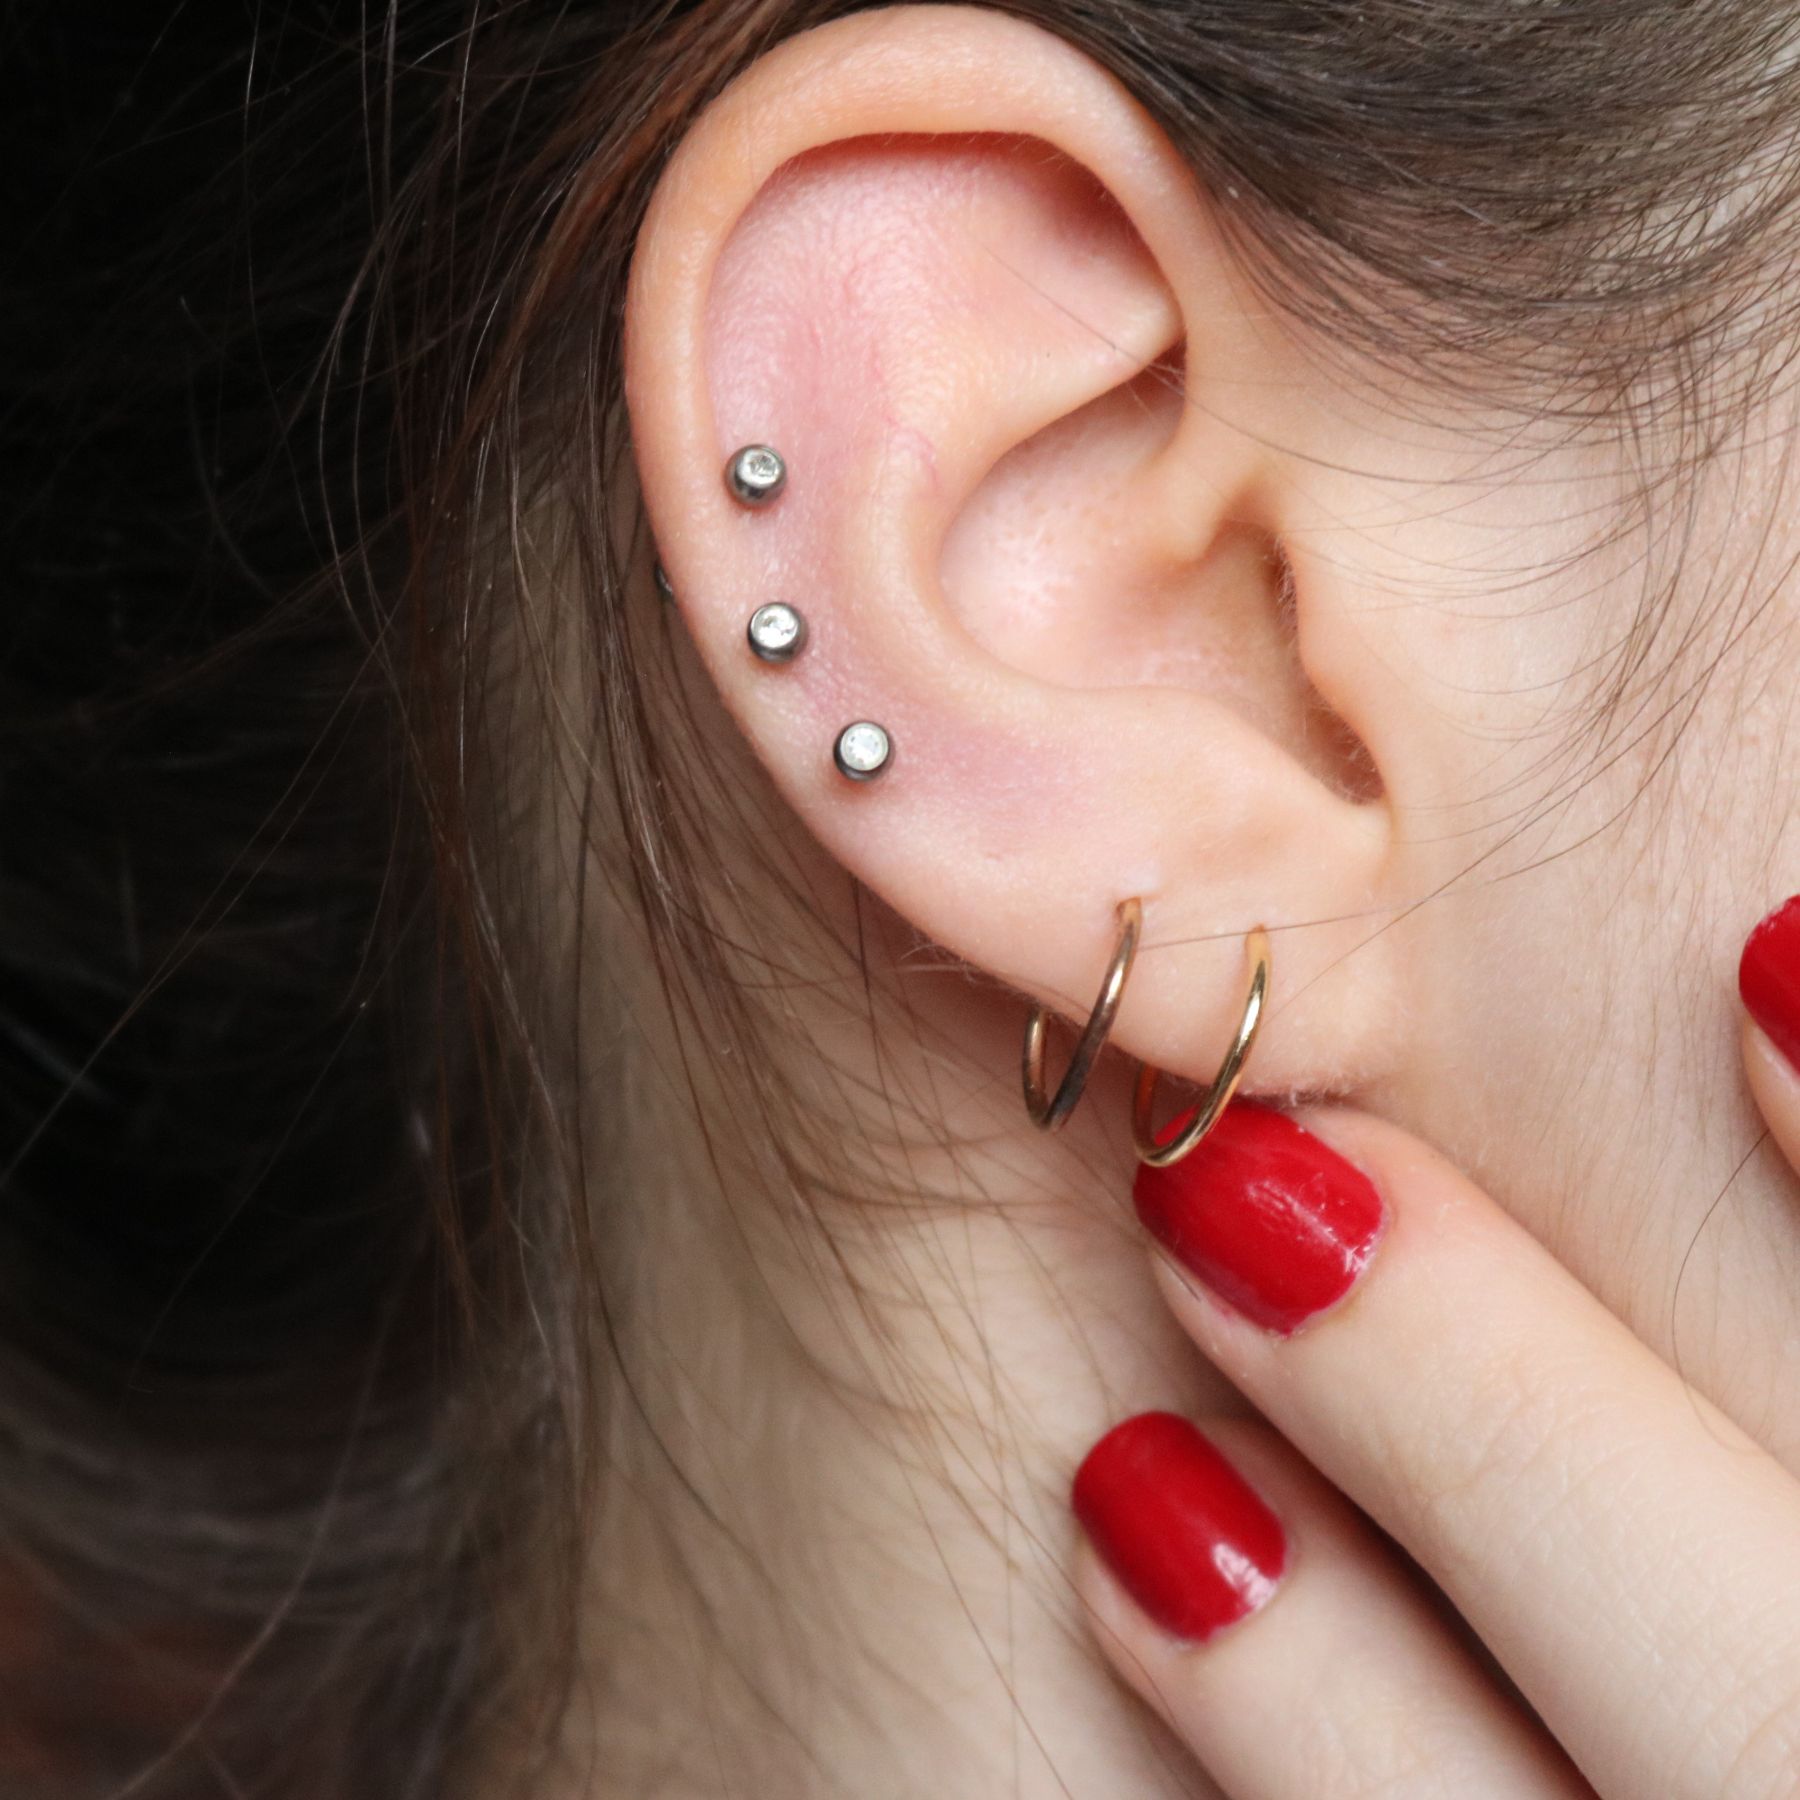 Ear with five piercings.